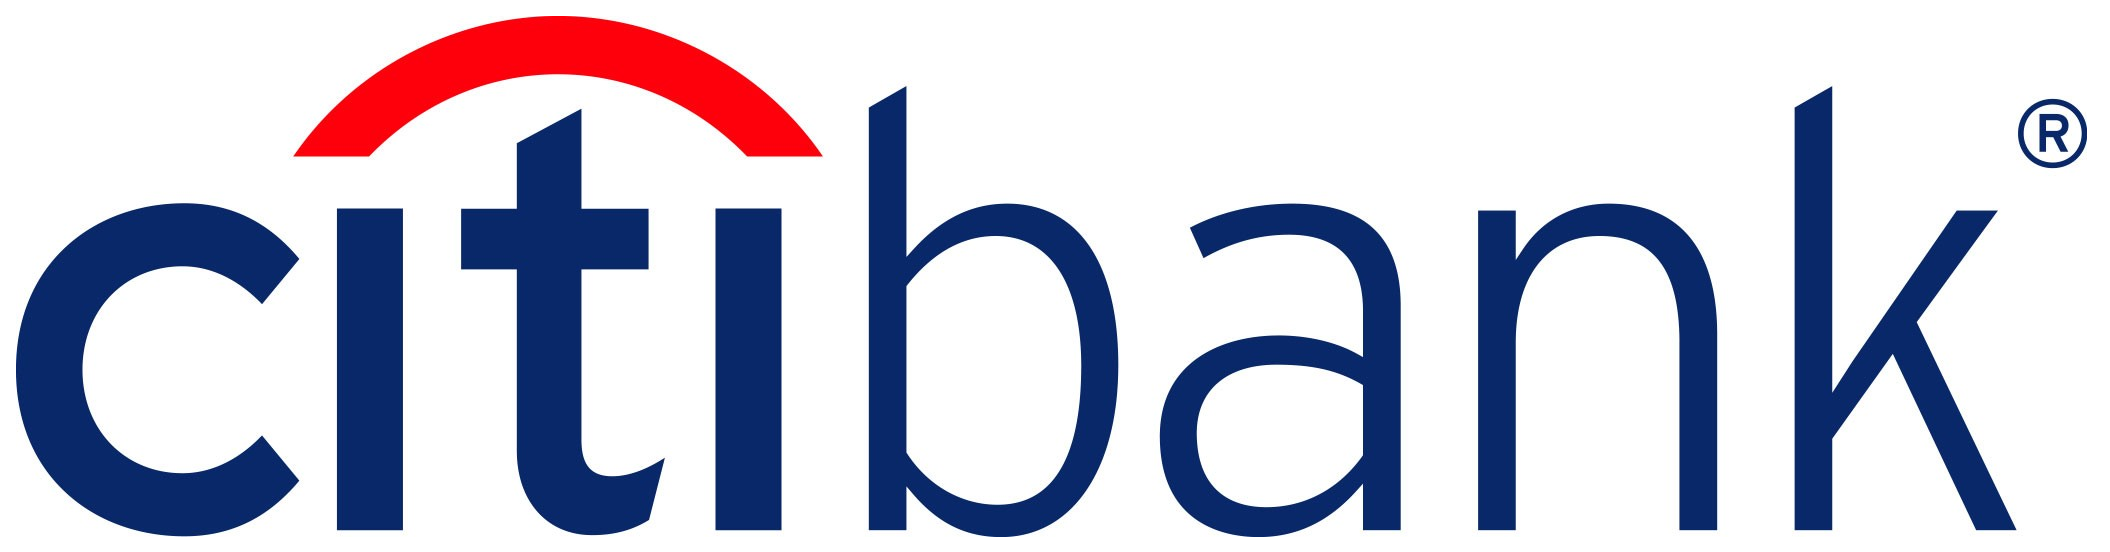 Citibank-Logo.png